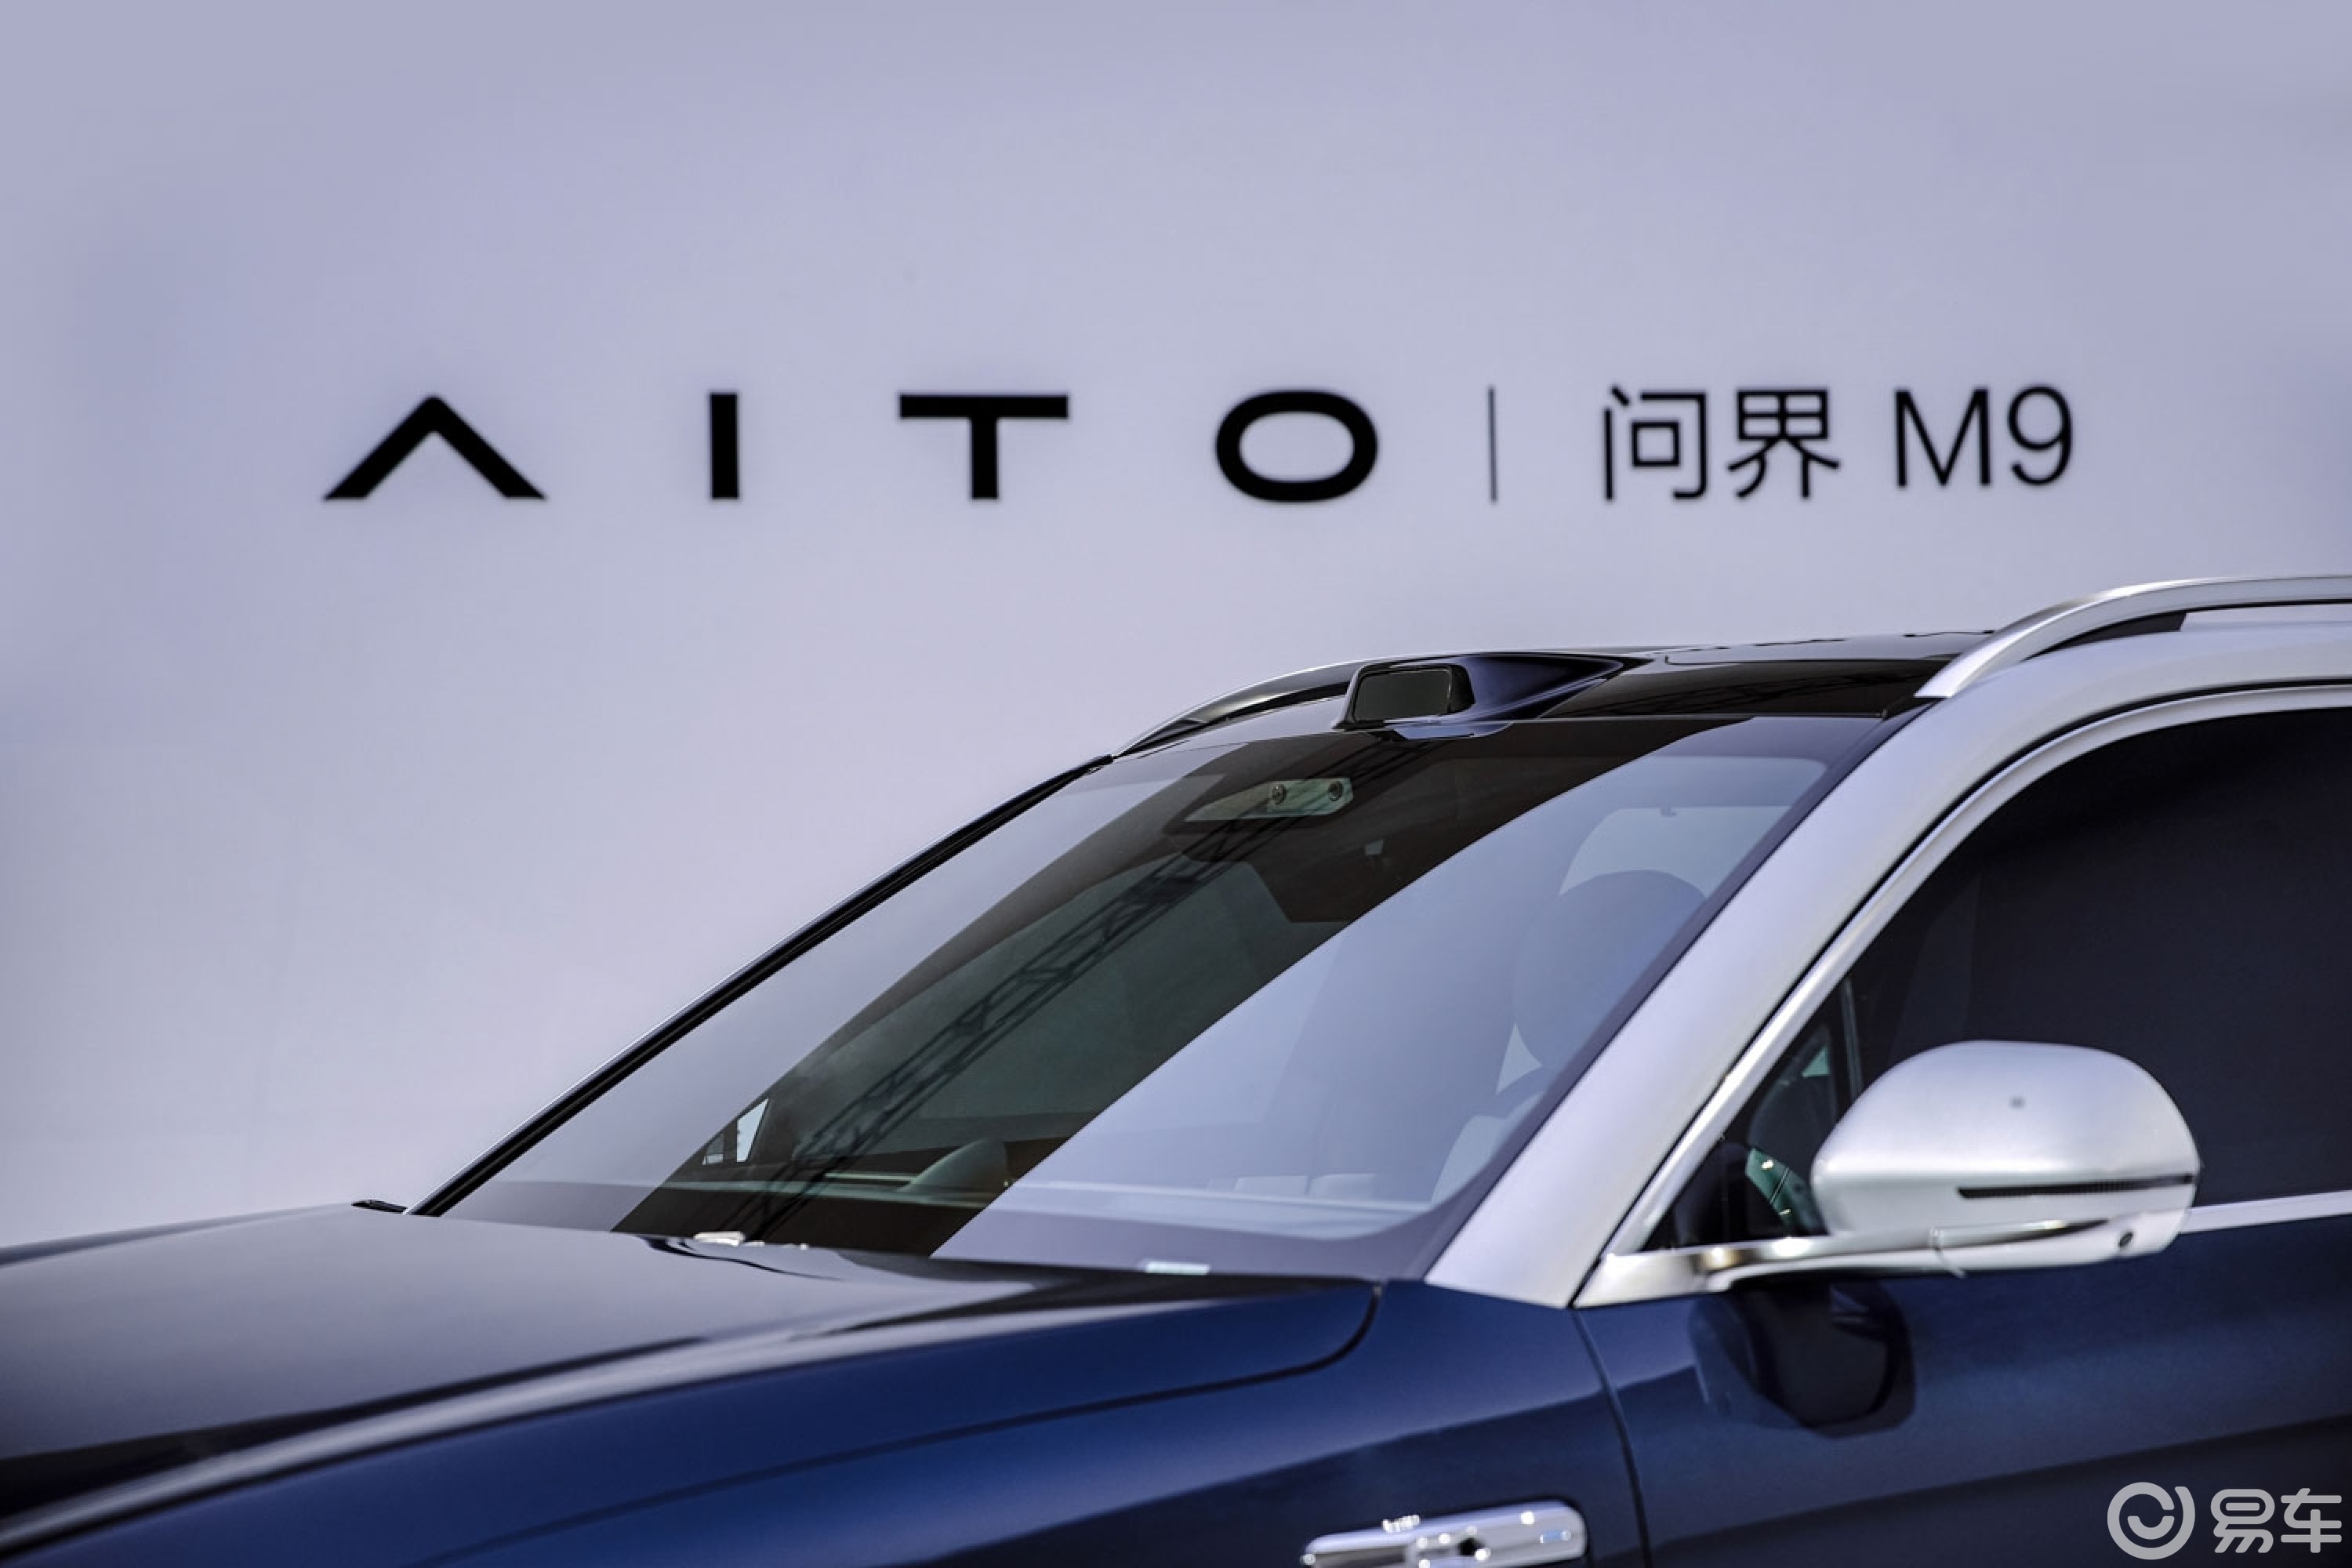 【问界M9】新AITO问界M9报价_问界M9图片_太平洋汽车